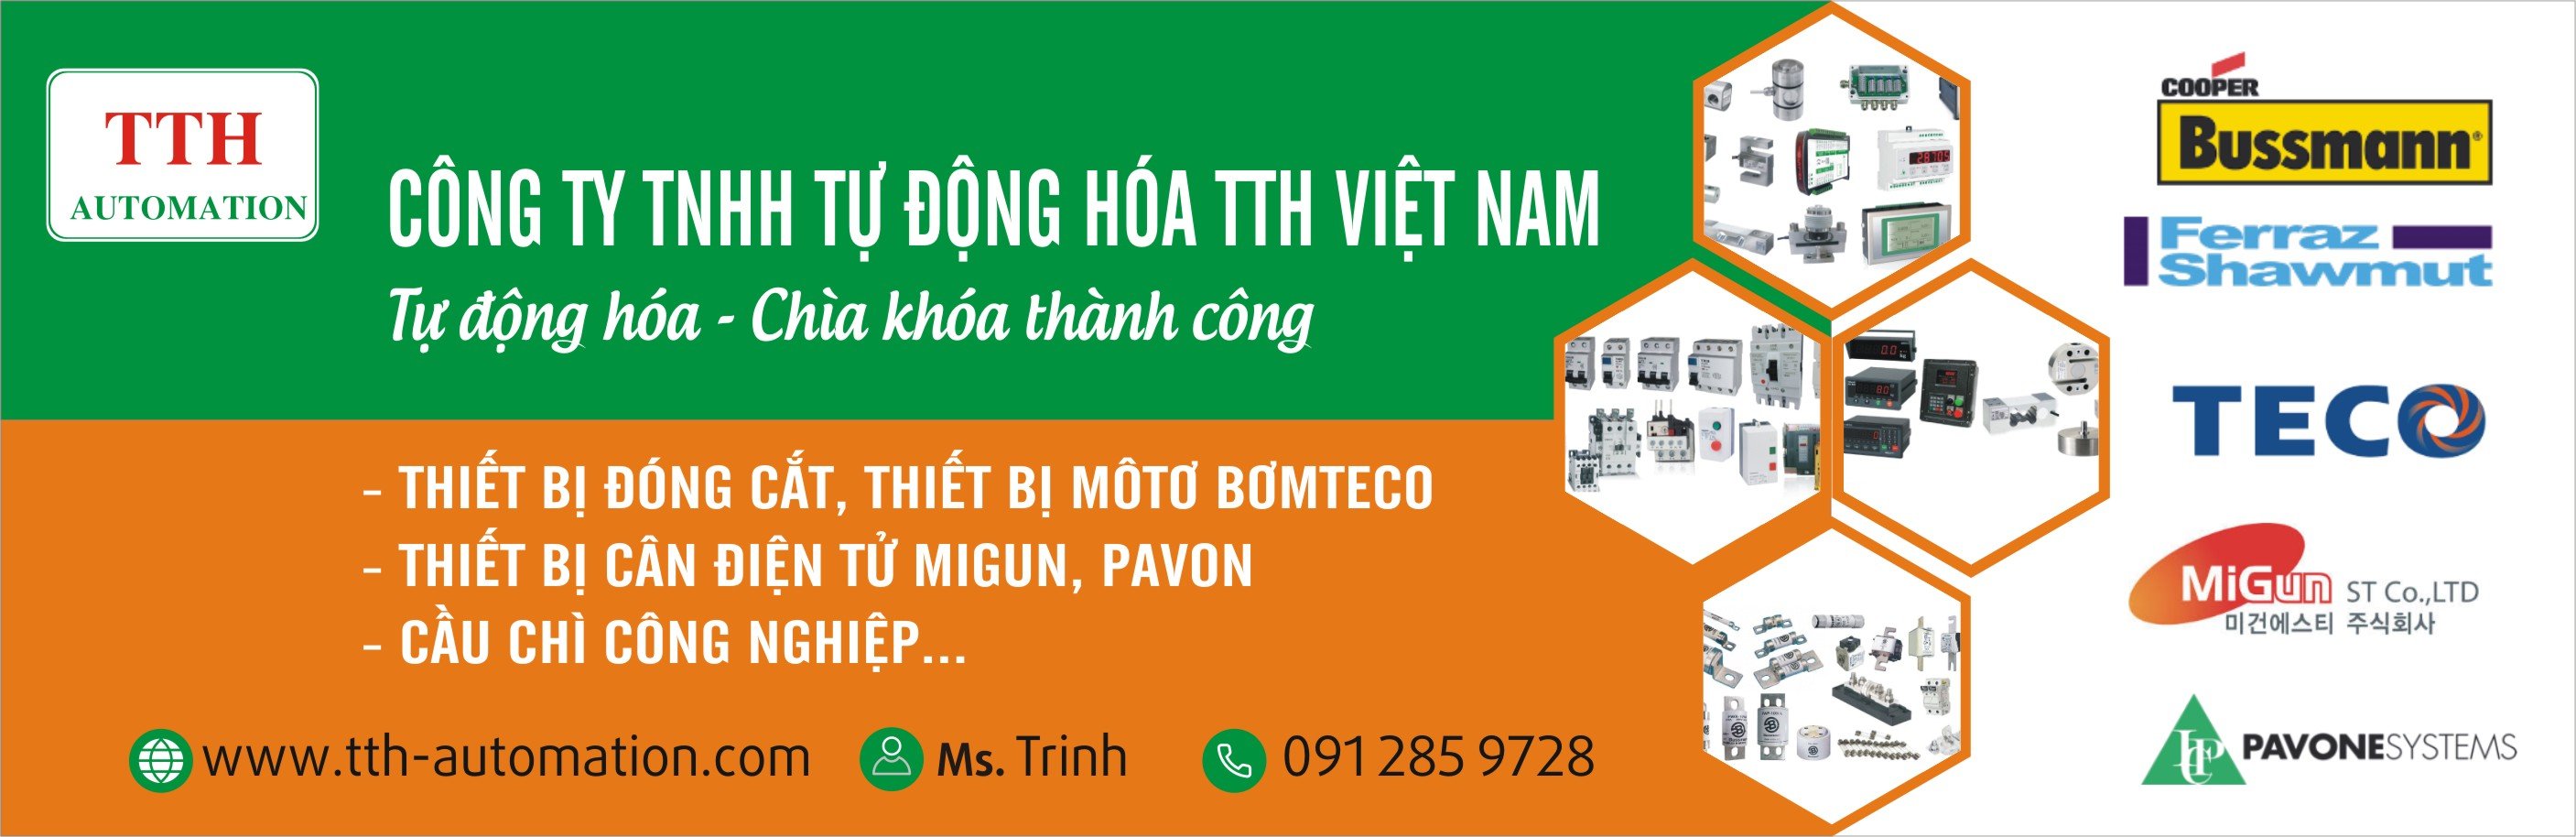 Công ty TNHH tự động hóa TTH Việt Nam